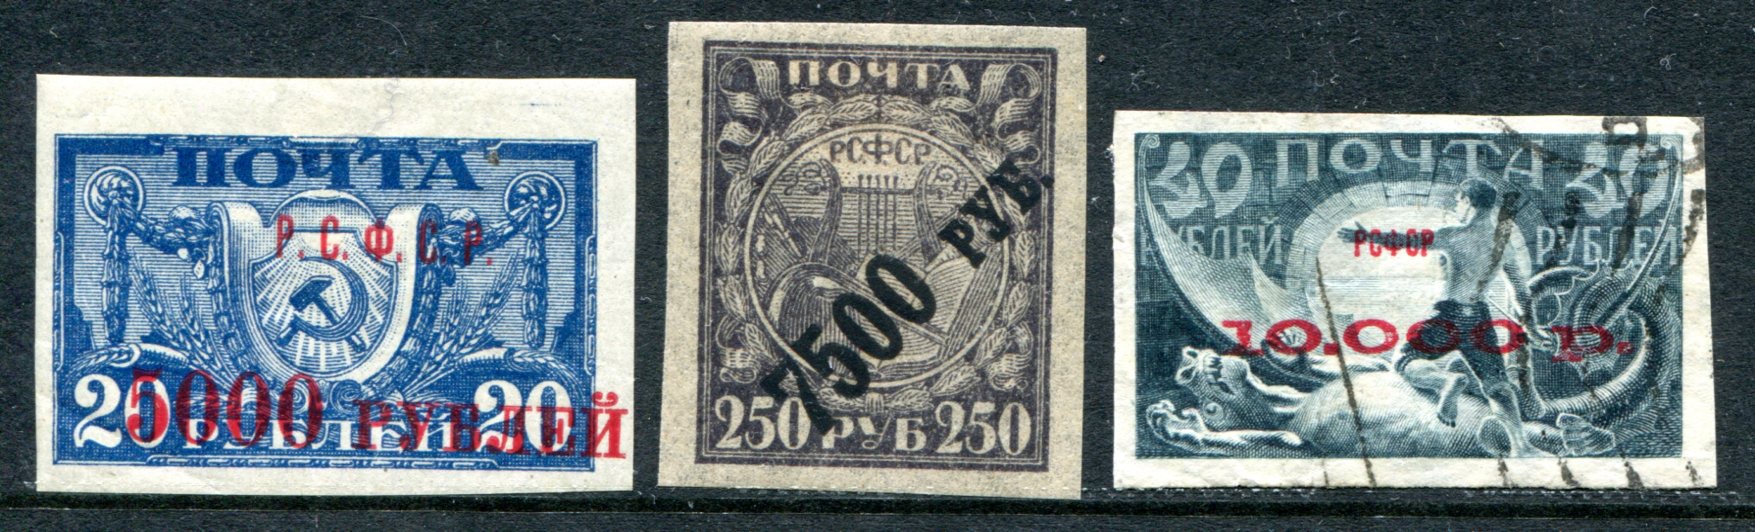 Марки с надпечатками из вспомогательного выпуска почтовых марок РСФСР